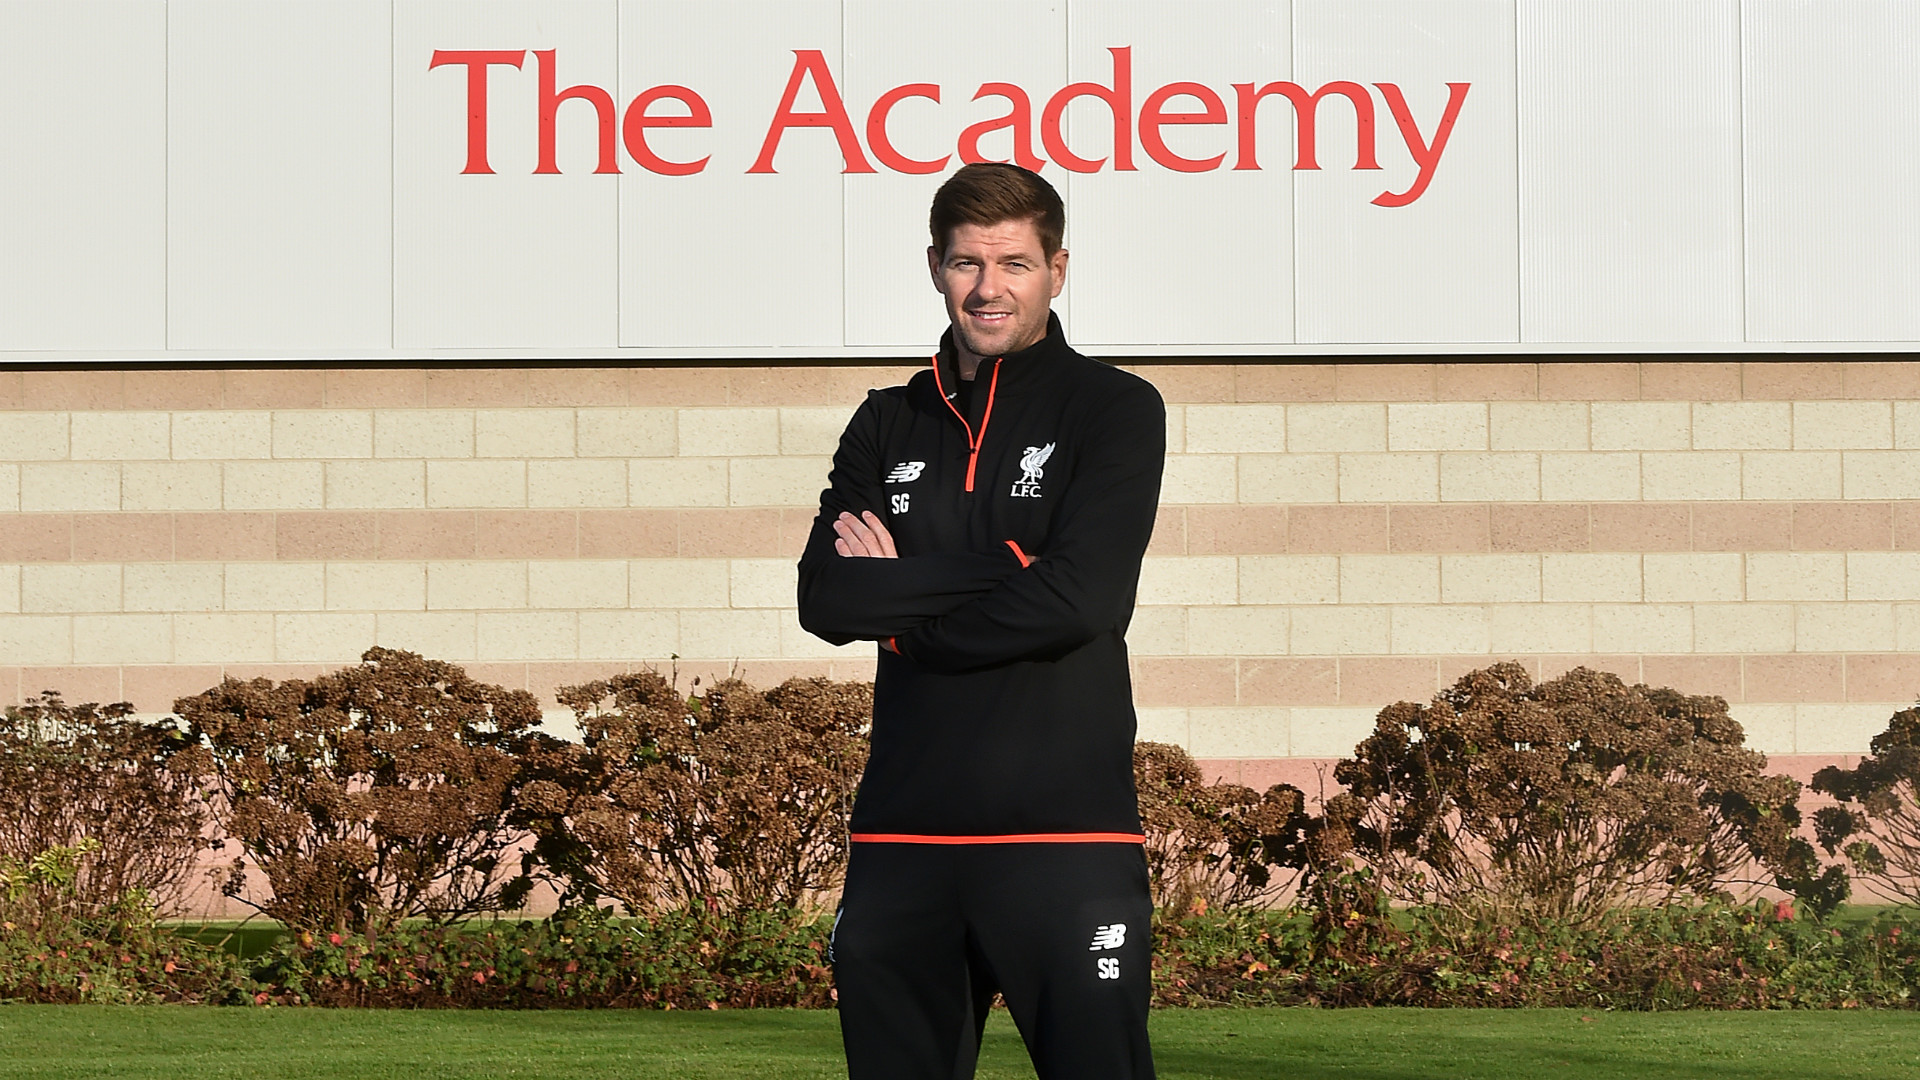 Steven-Gerrard-trenerem-akademii 